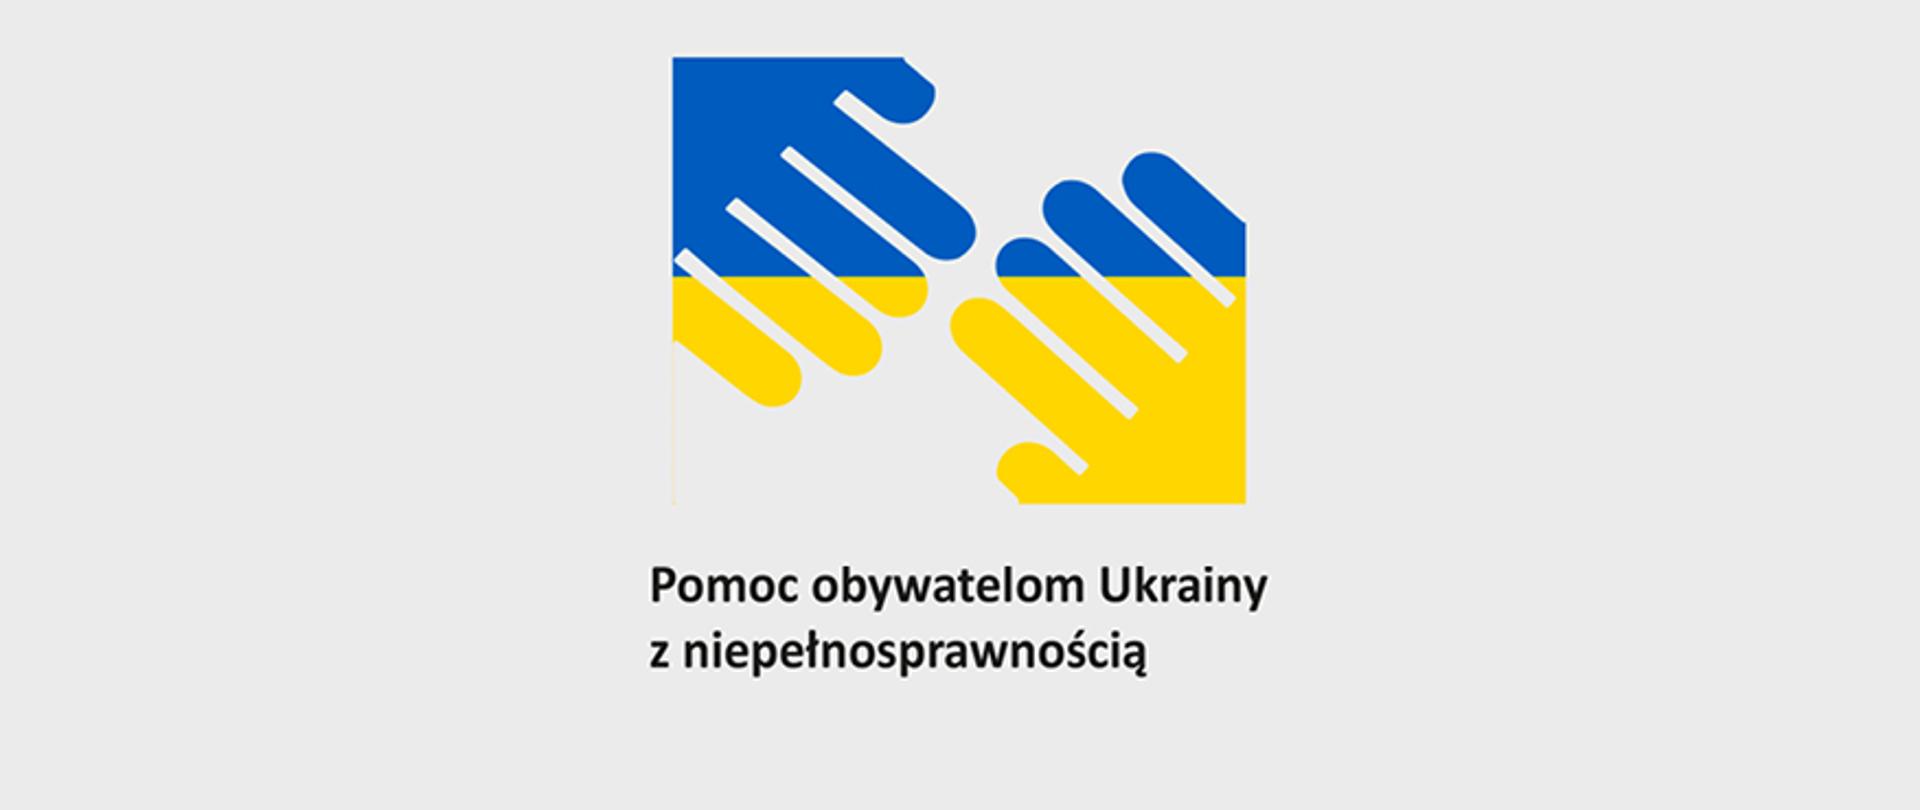 Symbole dłoni w barwach narodowych Ukrainy, tekst: "Pomoc obywatelom Ukrainy z niepełnosprawnością"